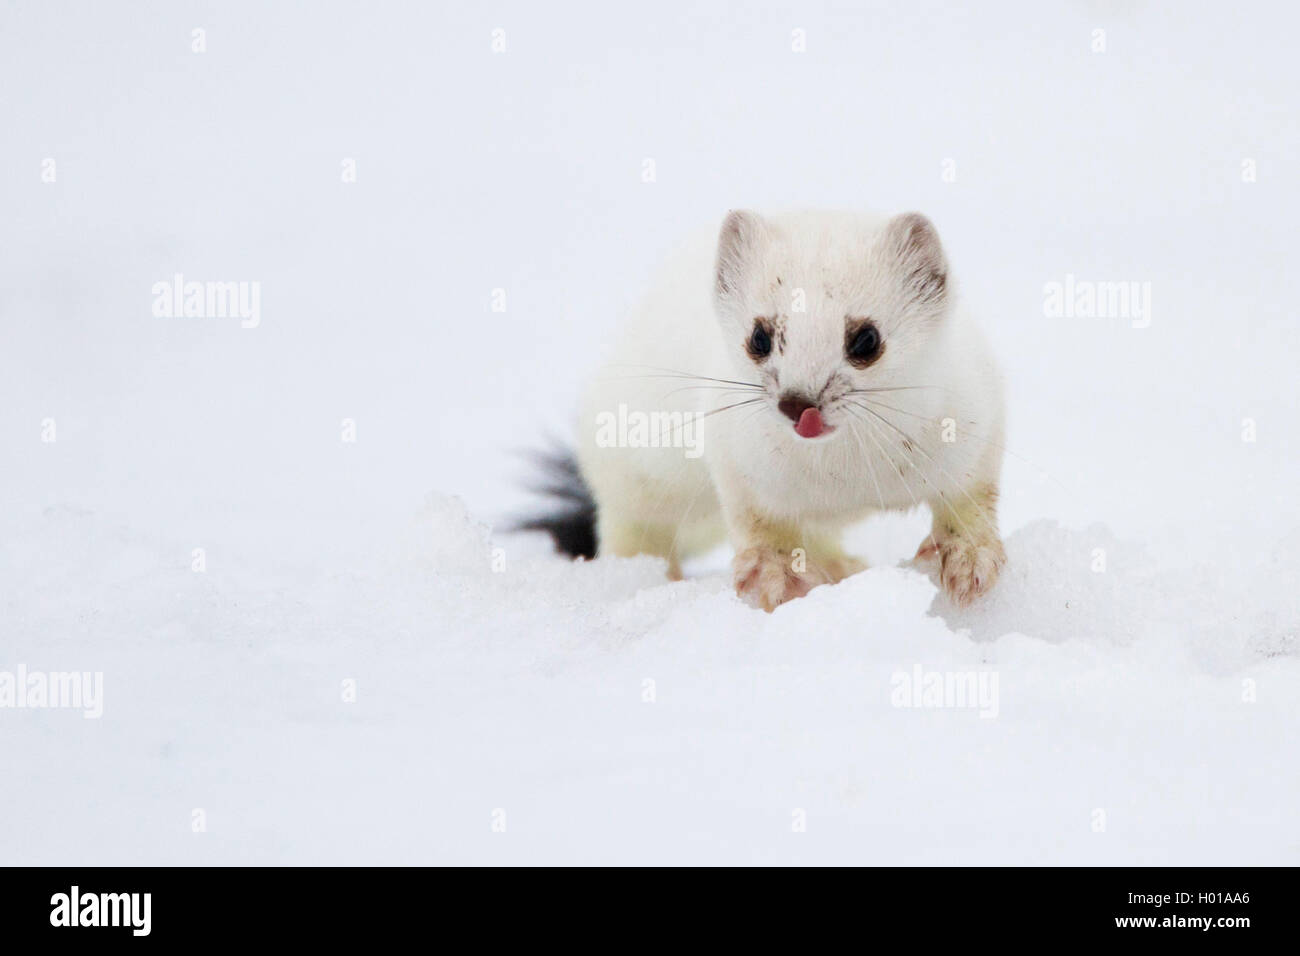 Ermellino, ermellino, corto-tailed donnola (Mustela erminea), in cappotto invernale di neve vista frontale, Germania Foto Stock